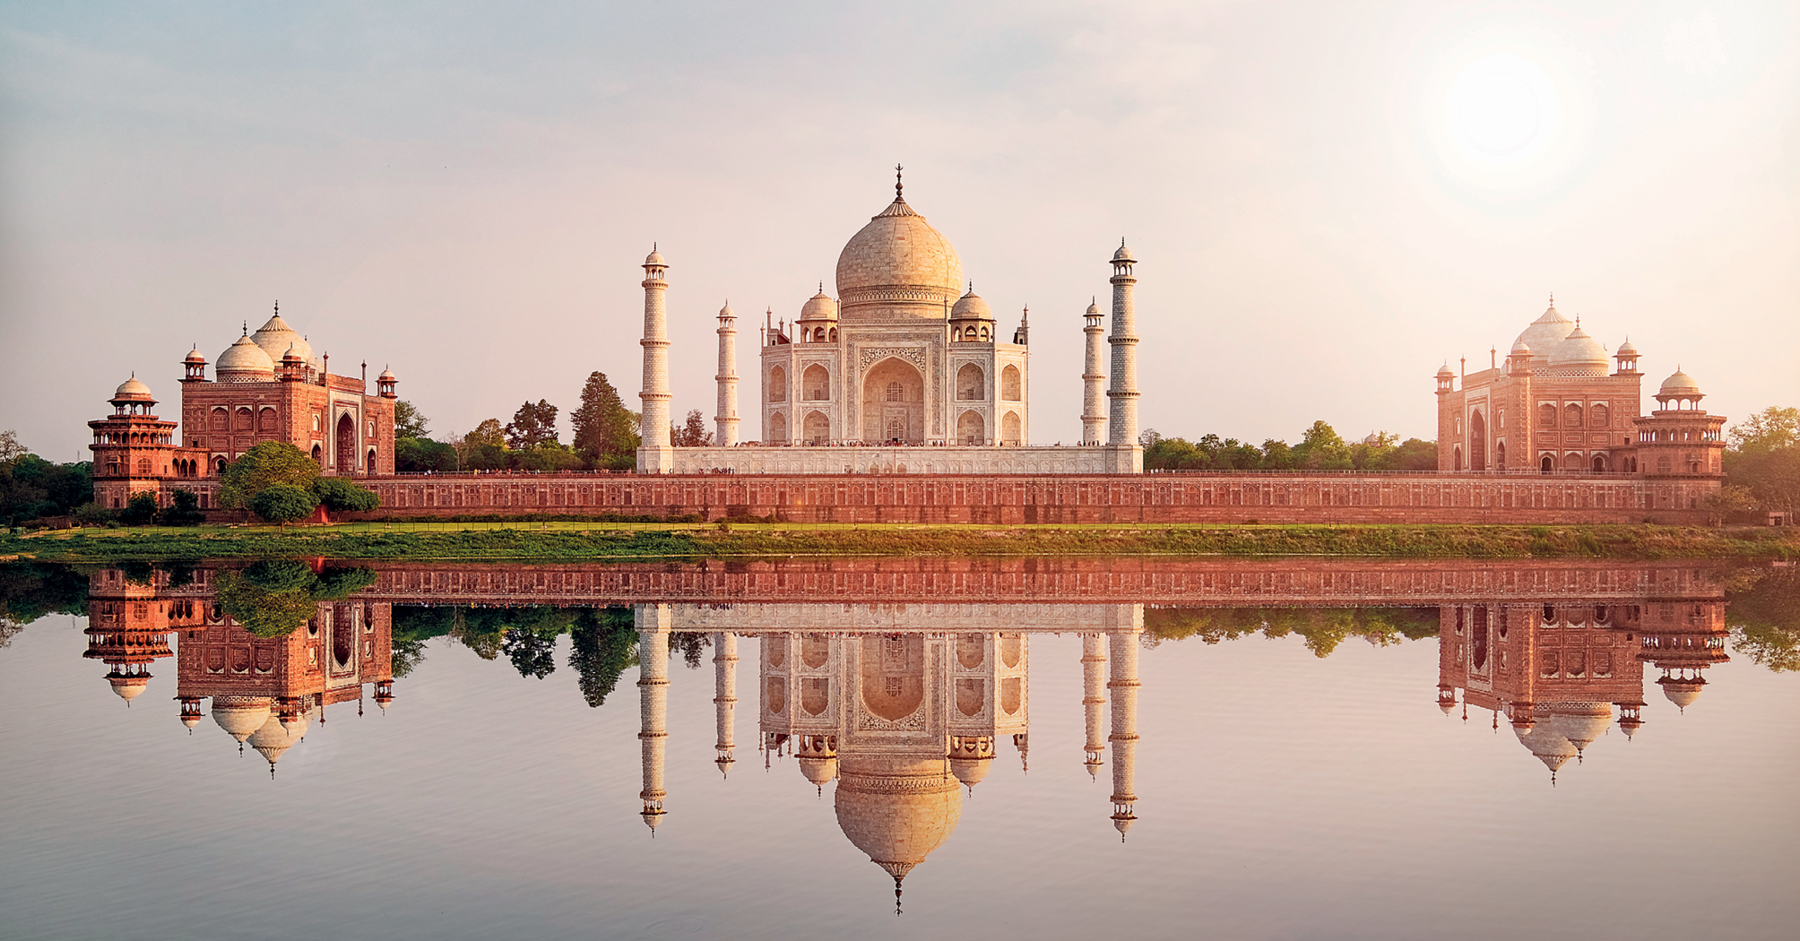 Fotografia. Taj Mahal cercado por um longo muro ornamentado. Em cada extremidade do muro, um palácio menor que o principal, com várias janelas e cúpulas arredondadas no topo. Todo o conjunto está refletido nas águas de um rio, à frente. O céu, ao fundo, apresenta tons de azul, lilás e cinza, bem claros.